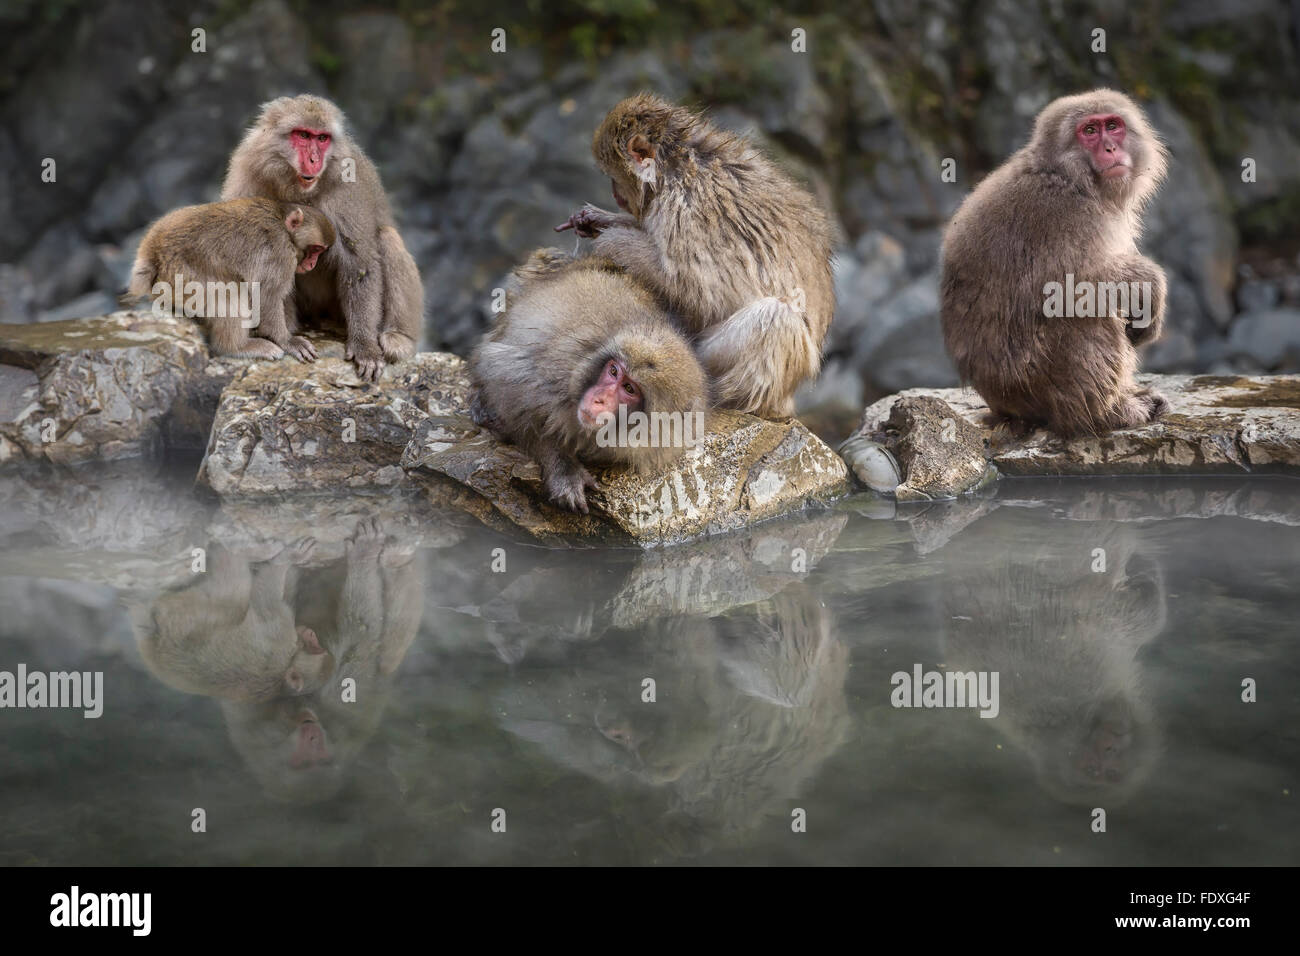 snow monkeys in hot spring at Nagano, Japan Stock Photo